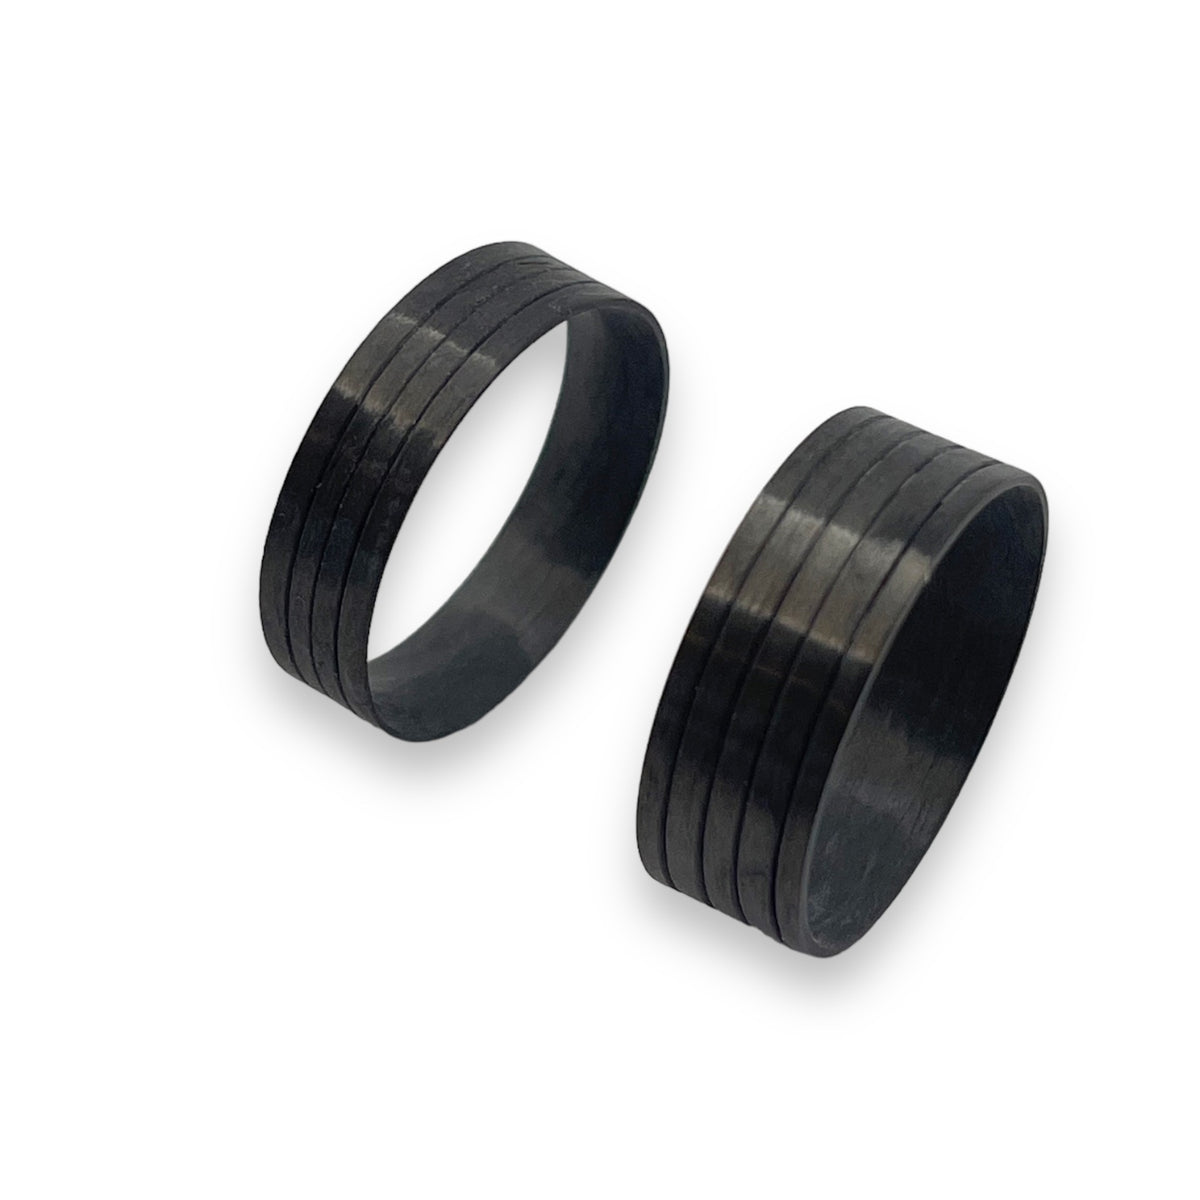 Carbon Fiber Ring blanks